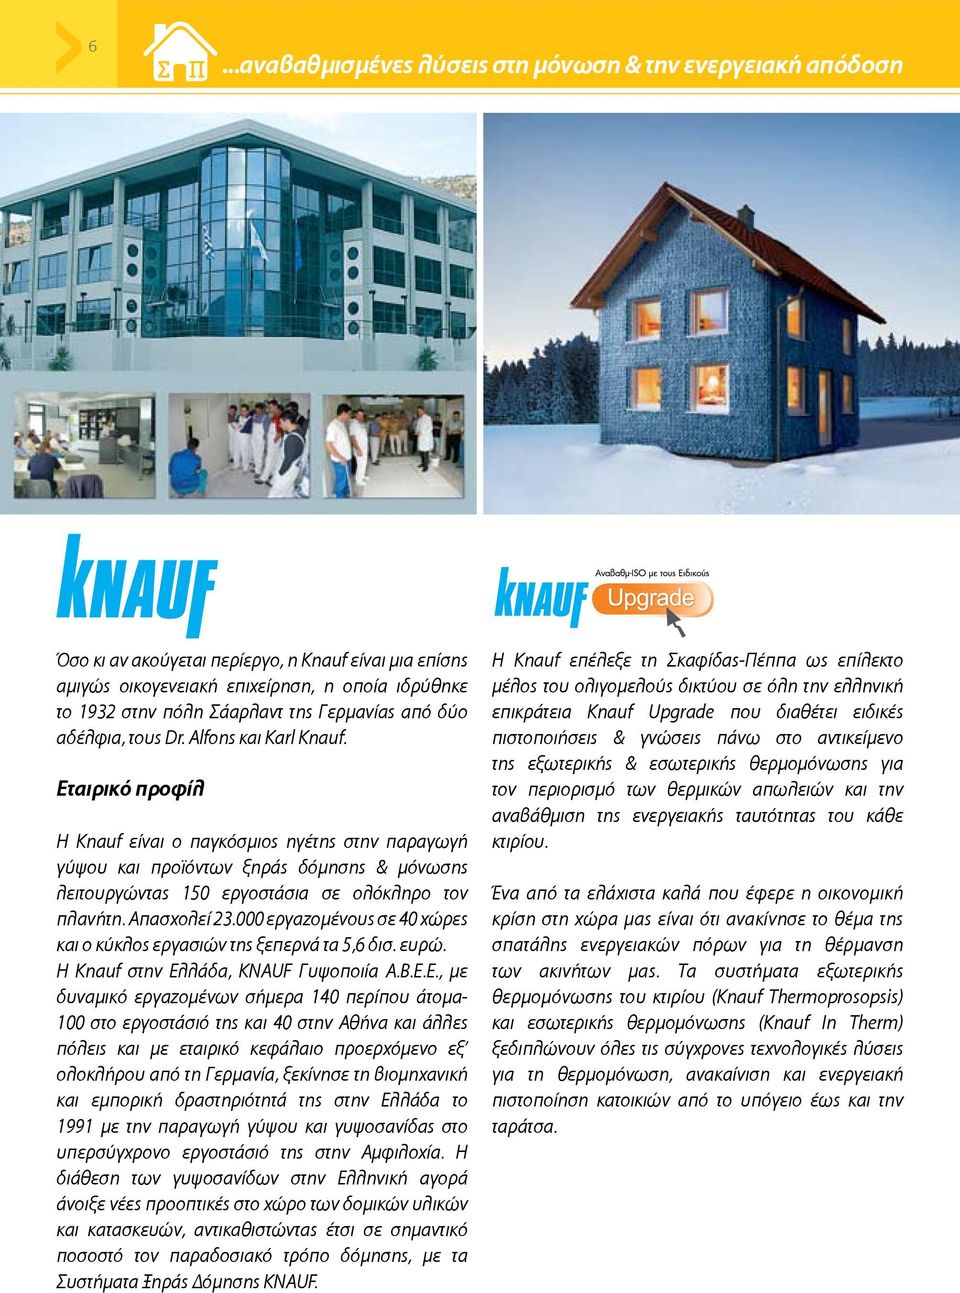 Εταιρικό προφίλ H Knauf είναι ο παγκόσμιος ηγέτης στην παραγωγή γύψου και προϊόντων ξηράς δόμησης & μόνωσης λειτουργώντας 150 εργοστάσια σε ολόκληρο τον πλανήτη. Απασχολεί 23.